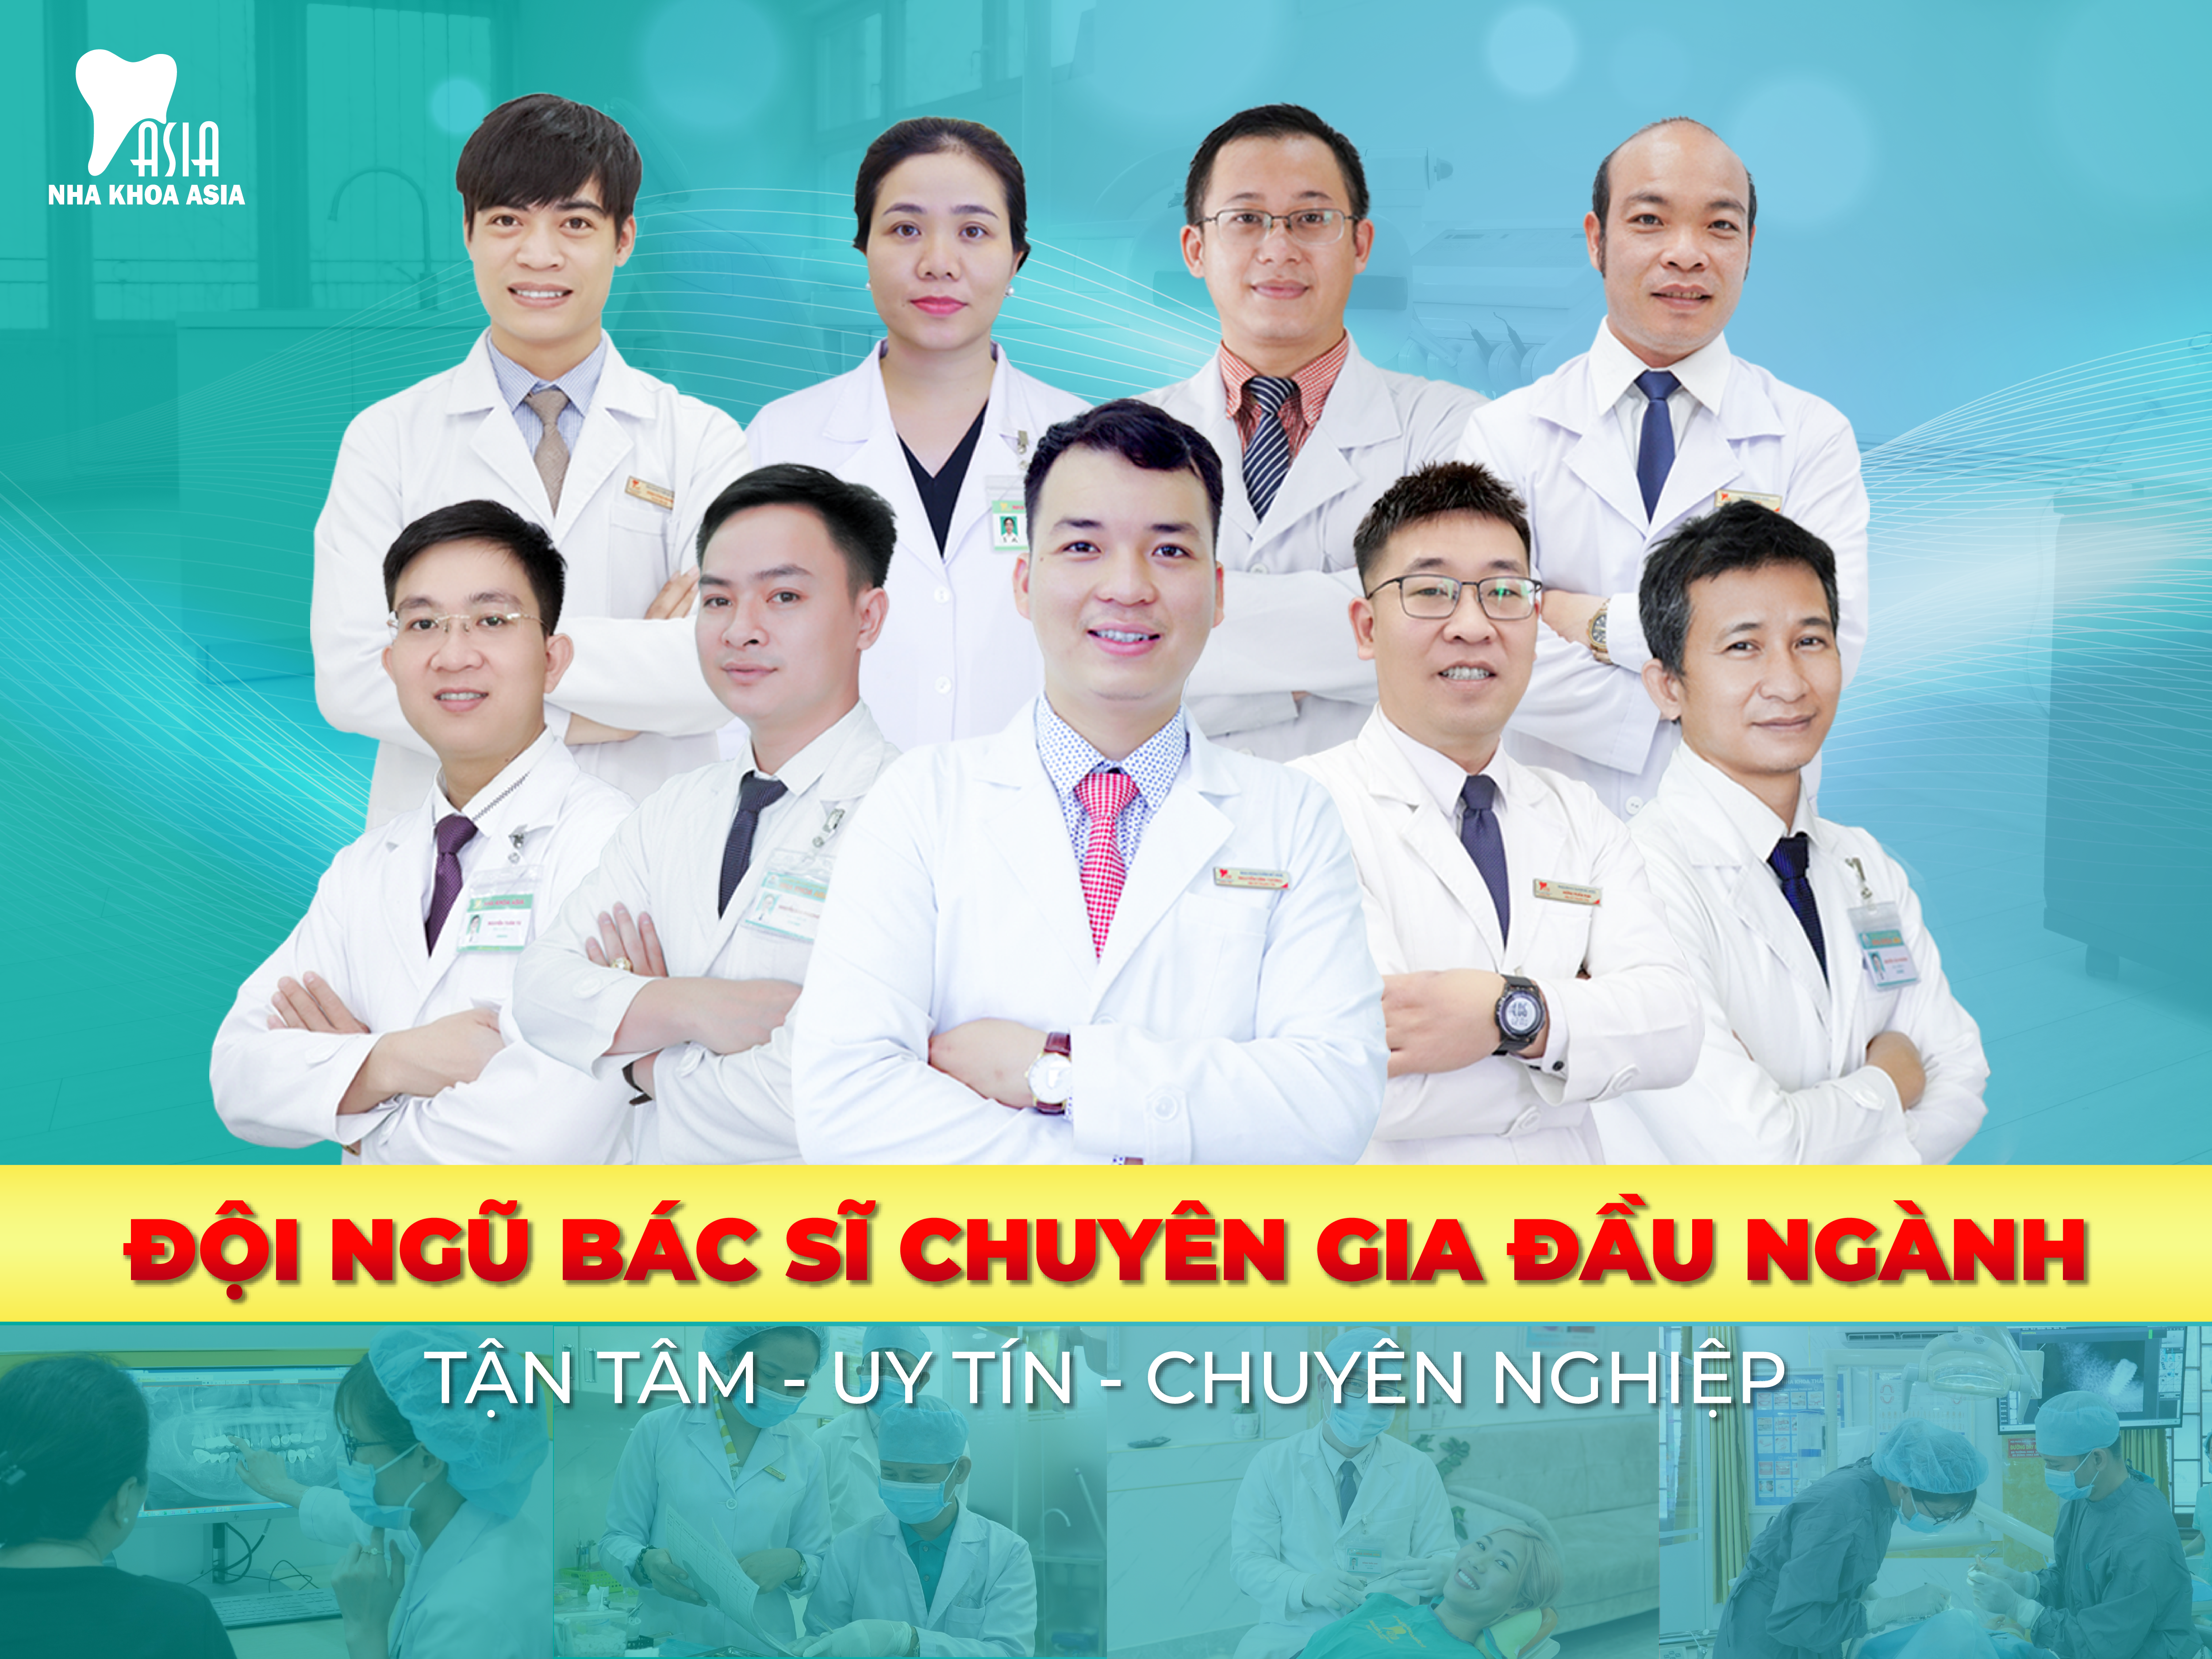 Nha khoa Asia có đội ngũ bác sĩ chuyên môn cao